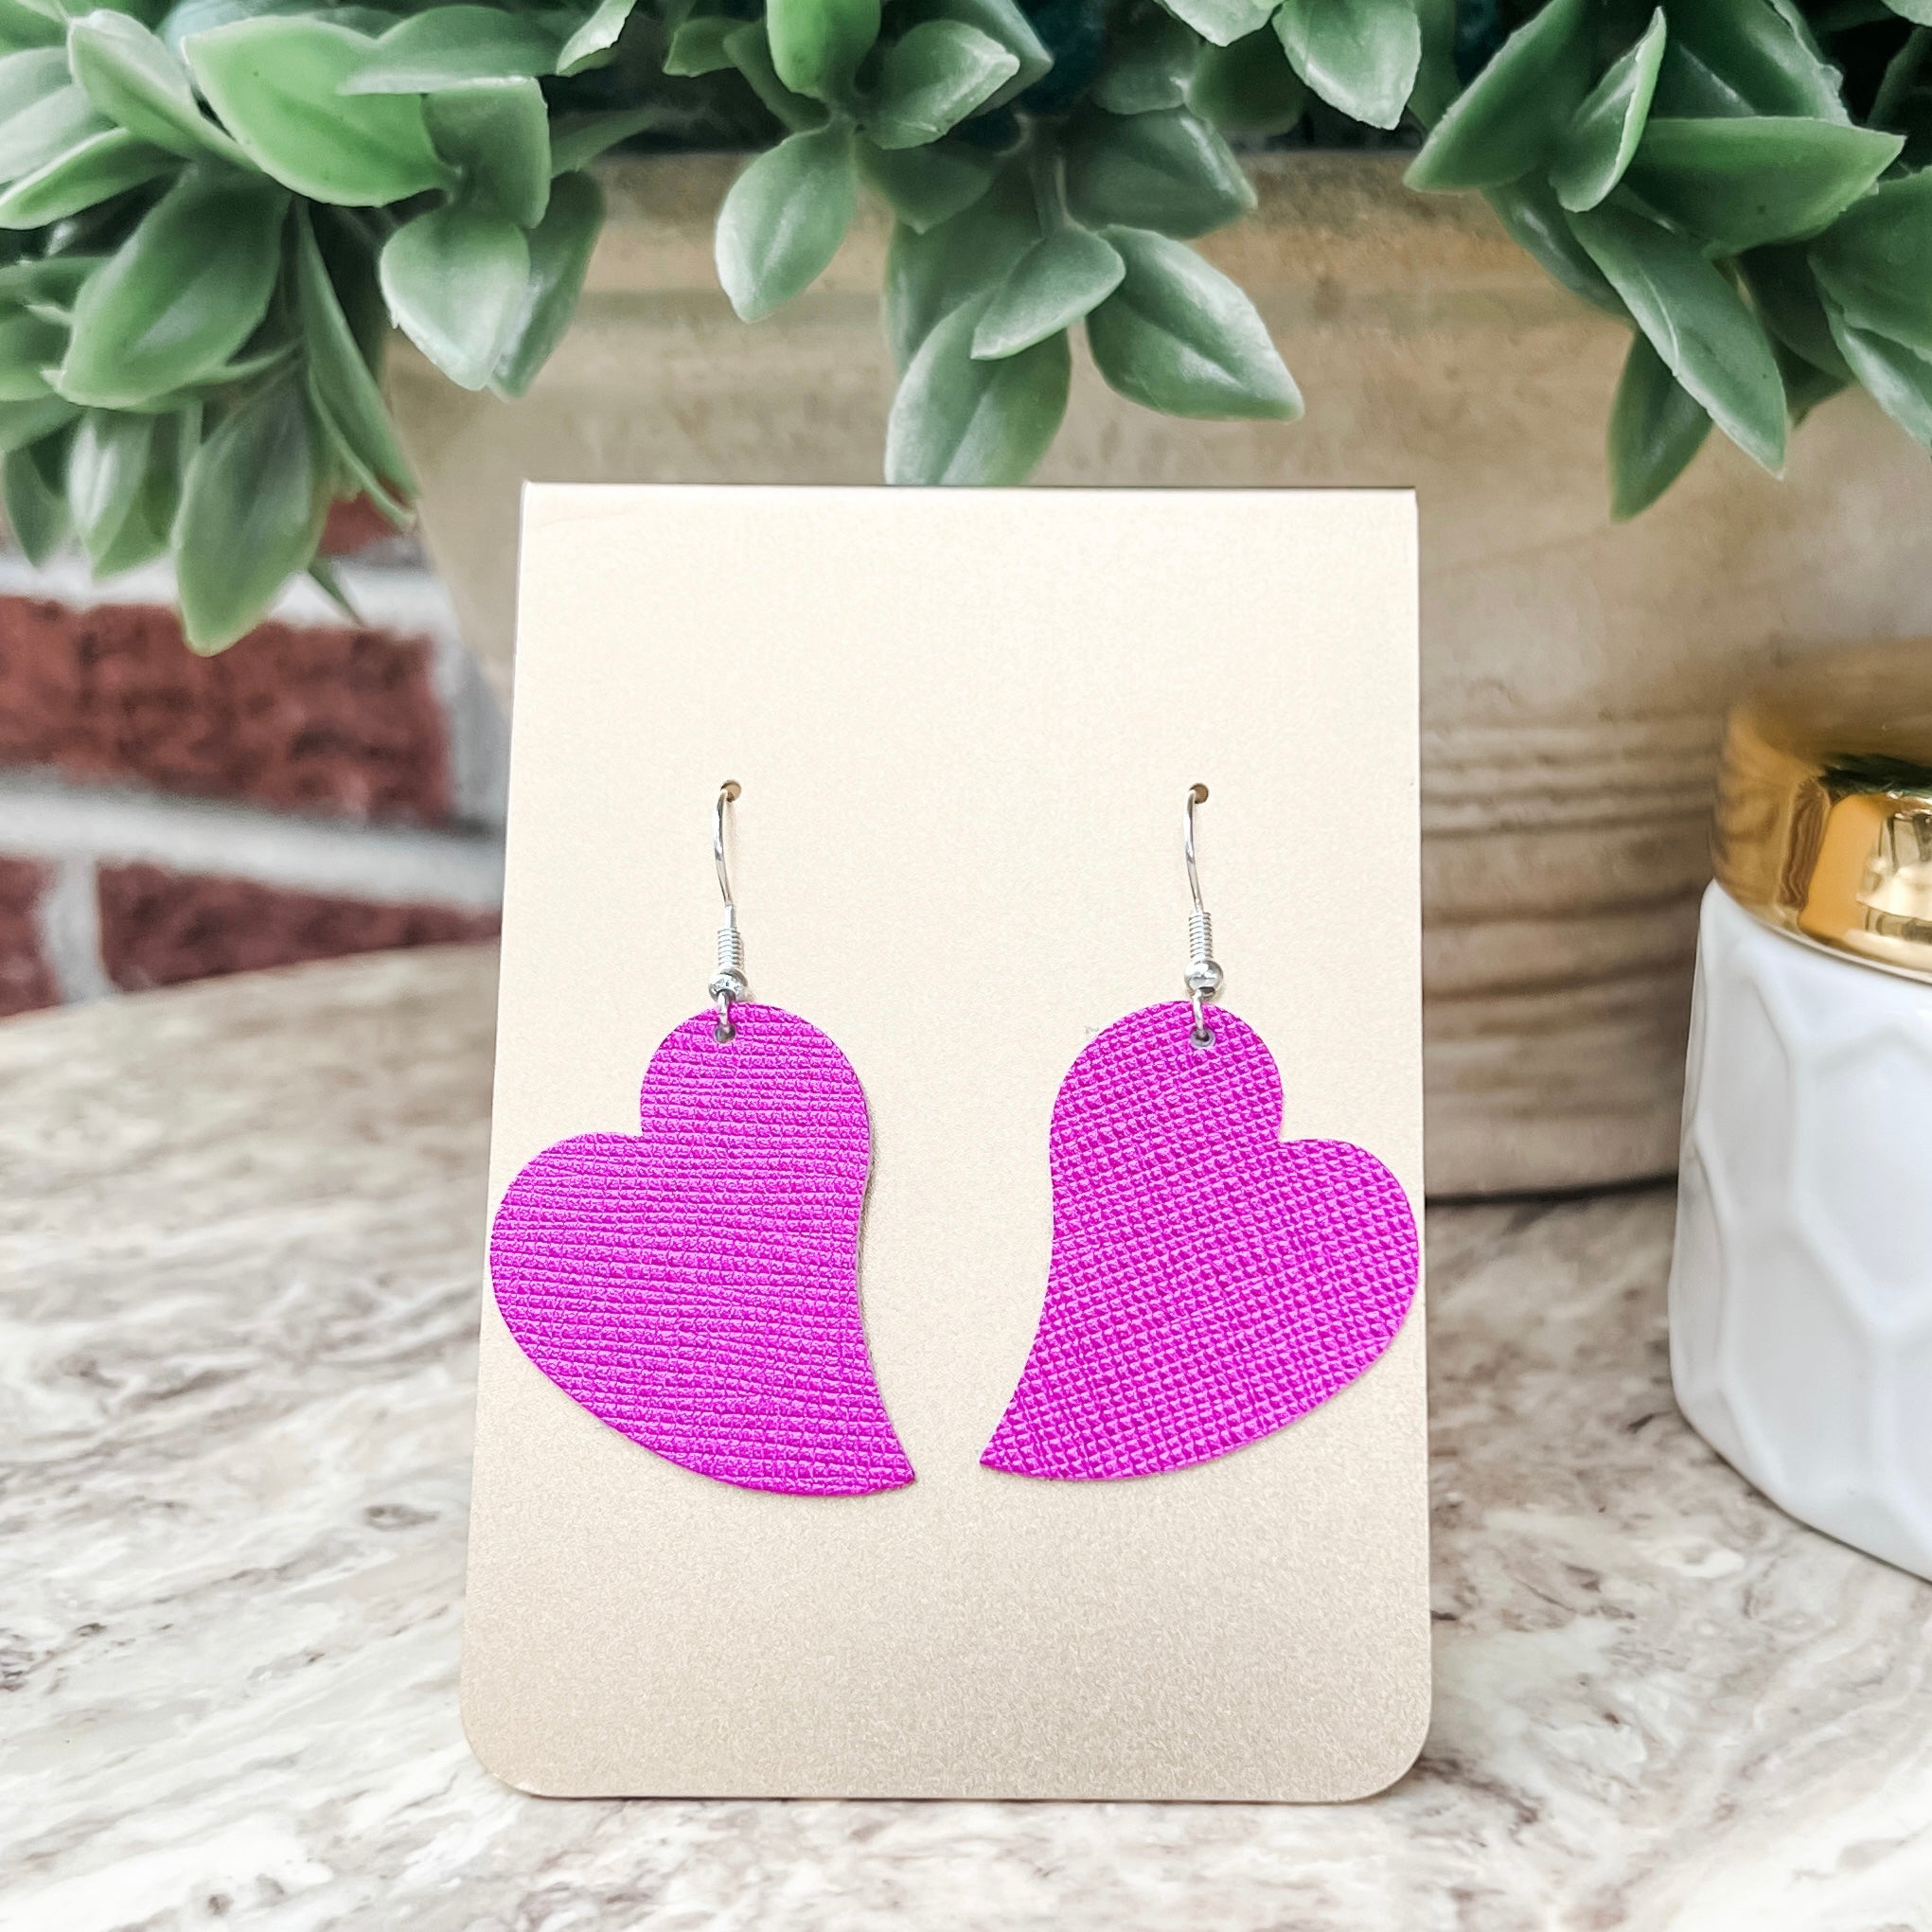 Handmade Genuine Leather Valentine Heart Love Pink Shimmer Earrings